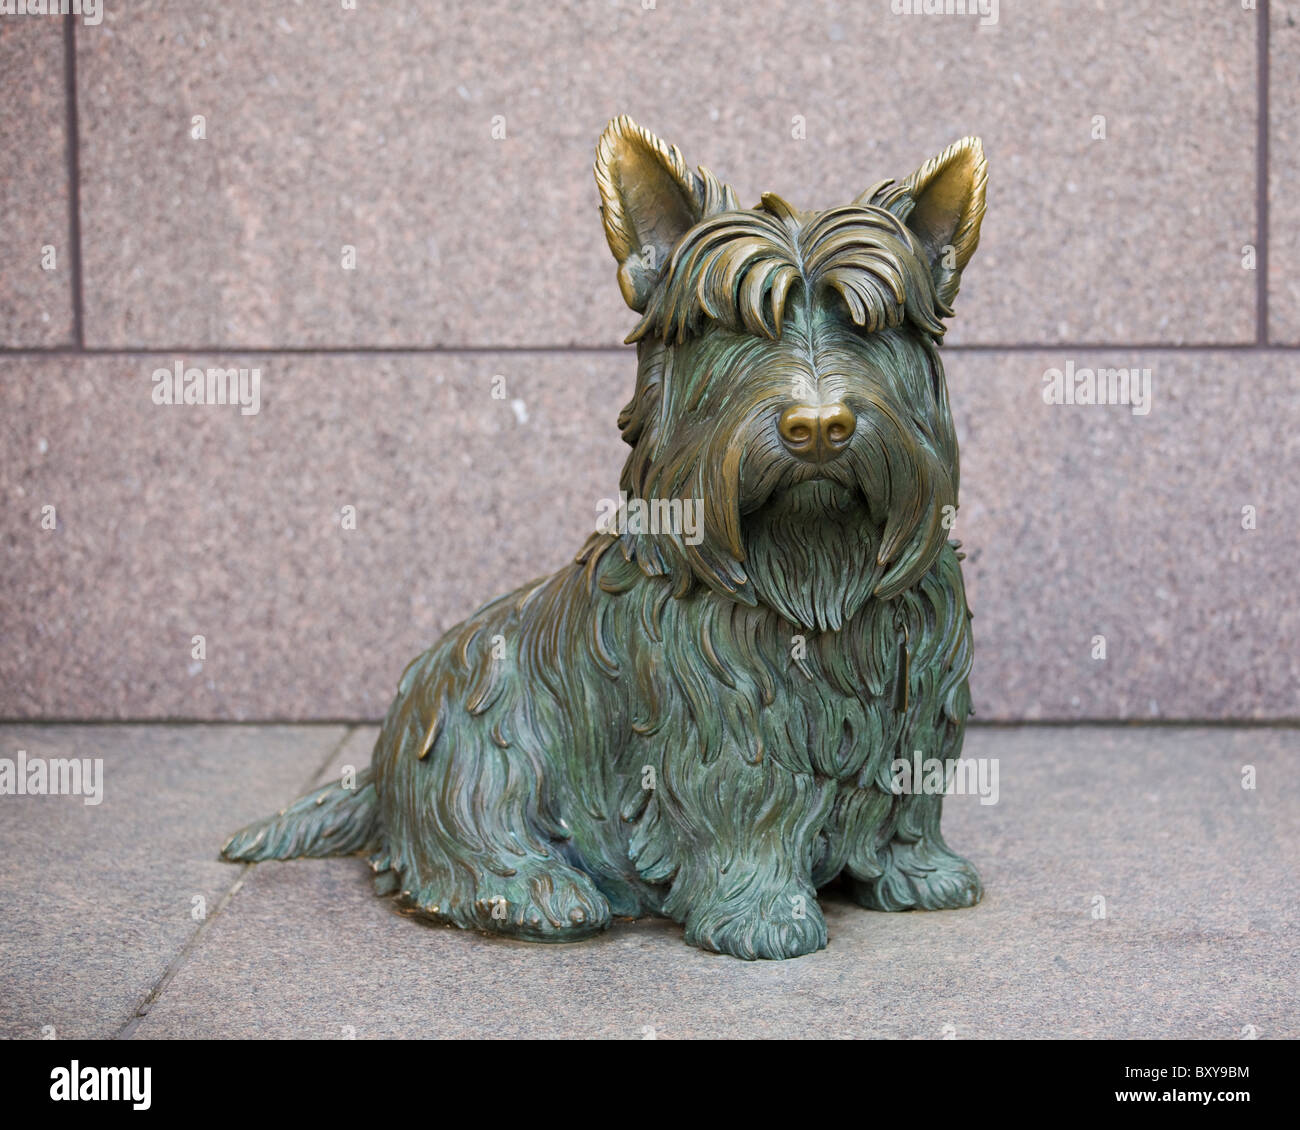 Une sculpture en bronze de Fala, FDR's pet Scottish Terrier - Washington, DC USA Banque D'Images